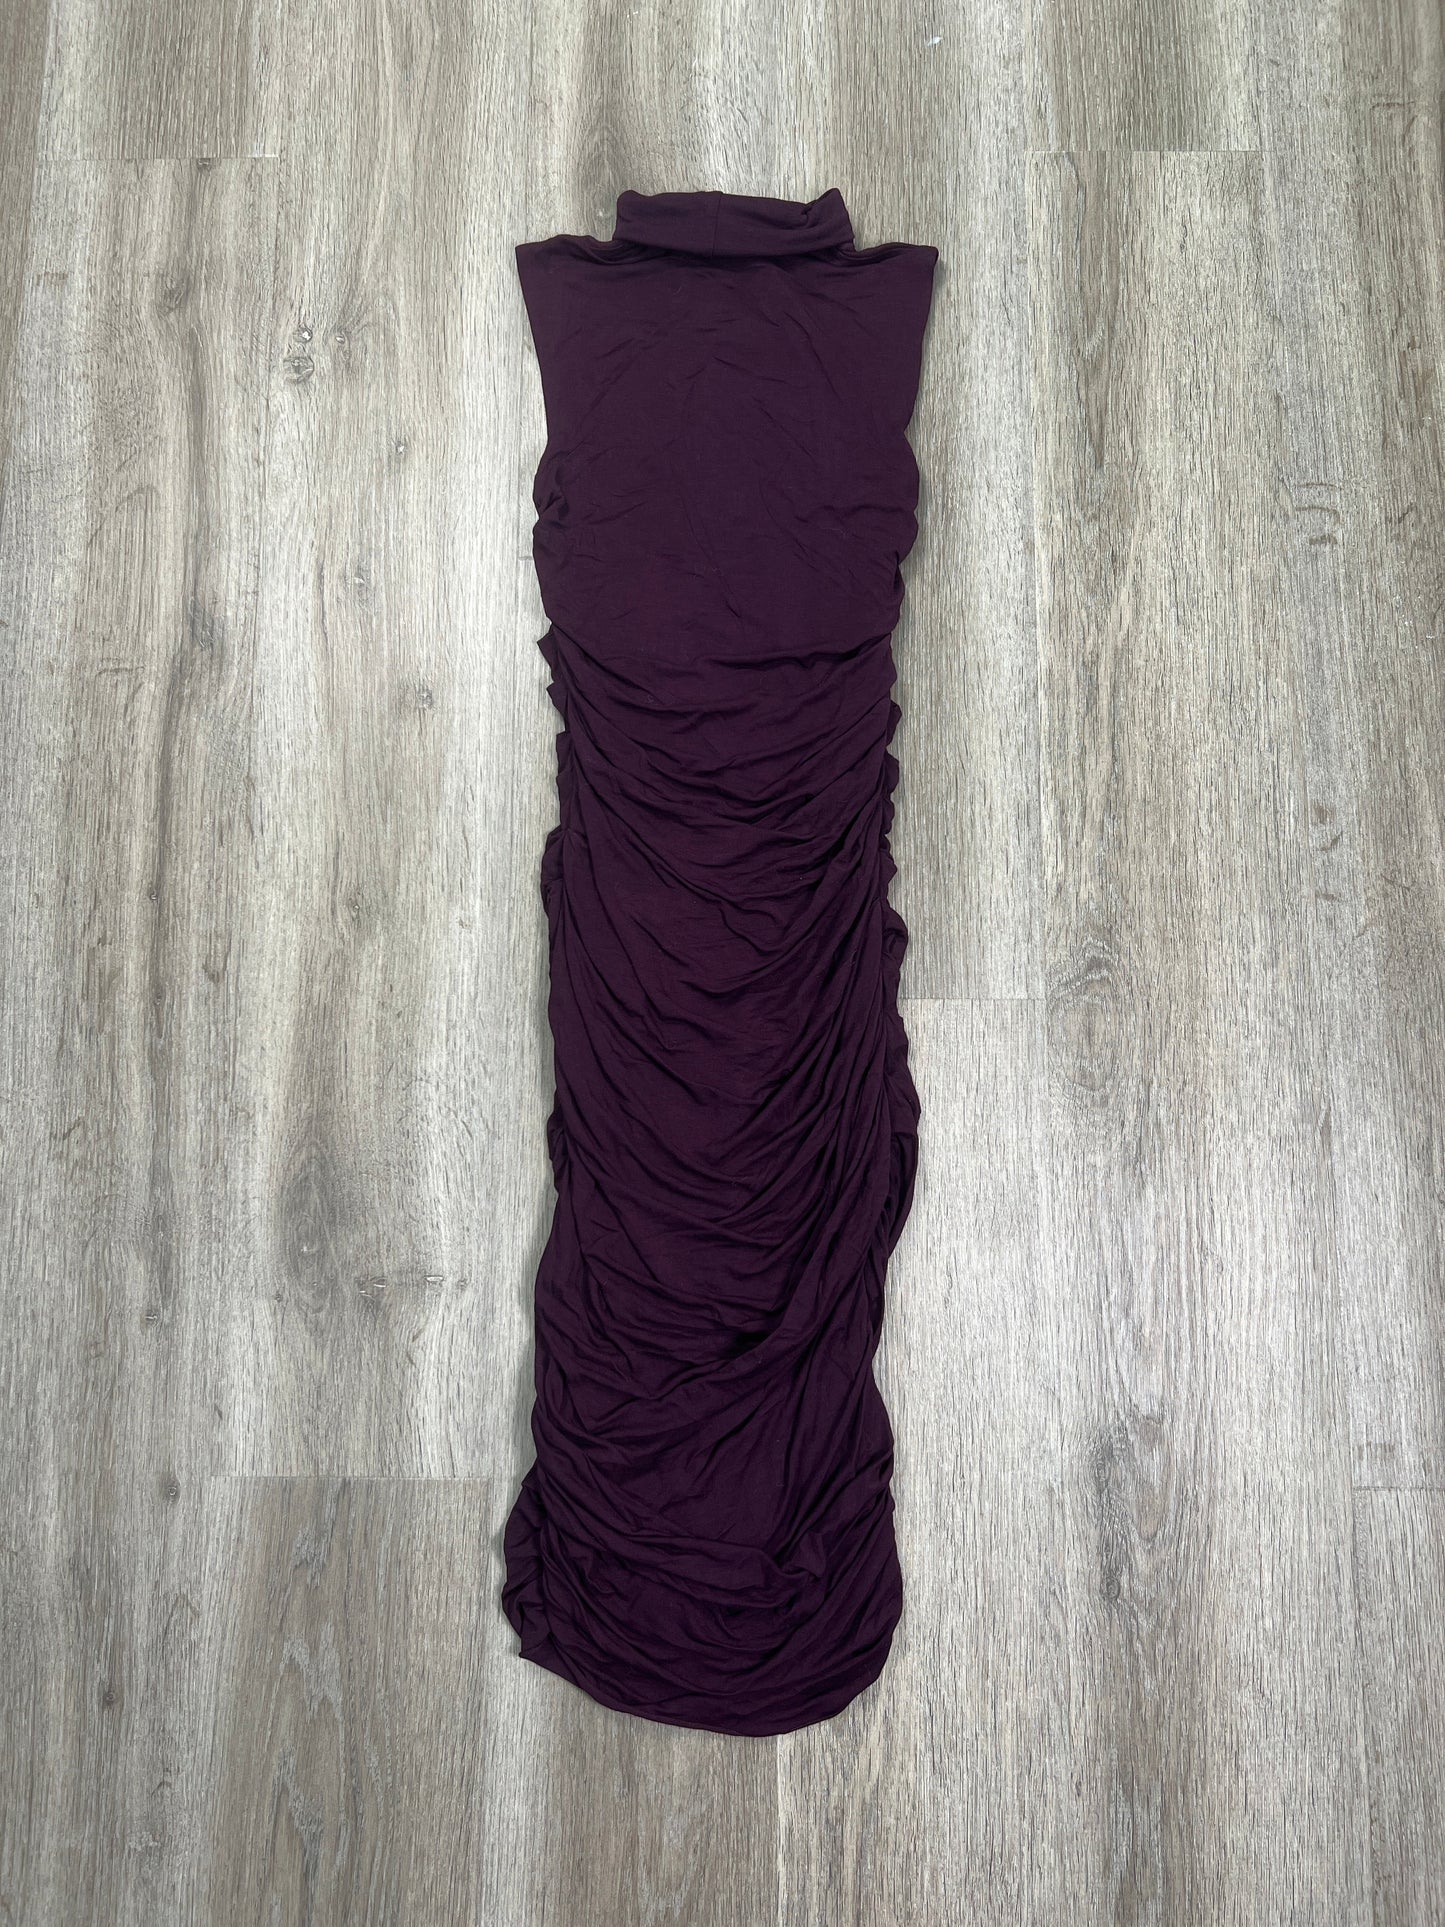 Dress Casual Midi By Bailey 44  Size: Xs